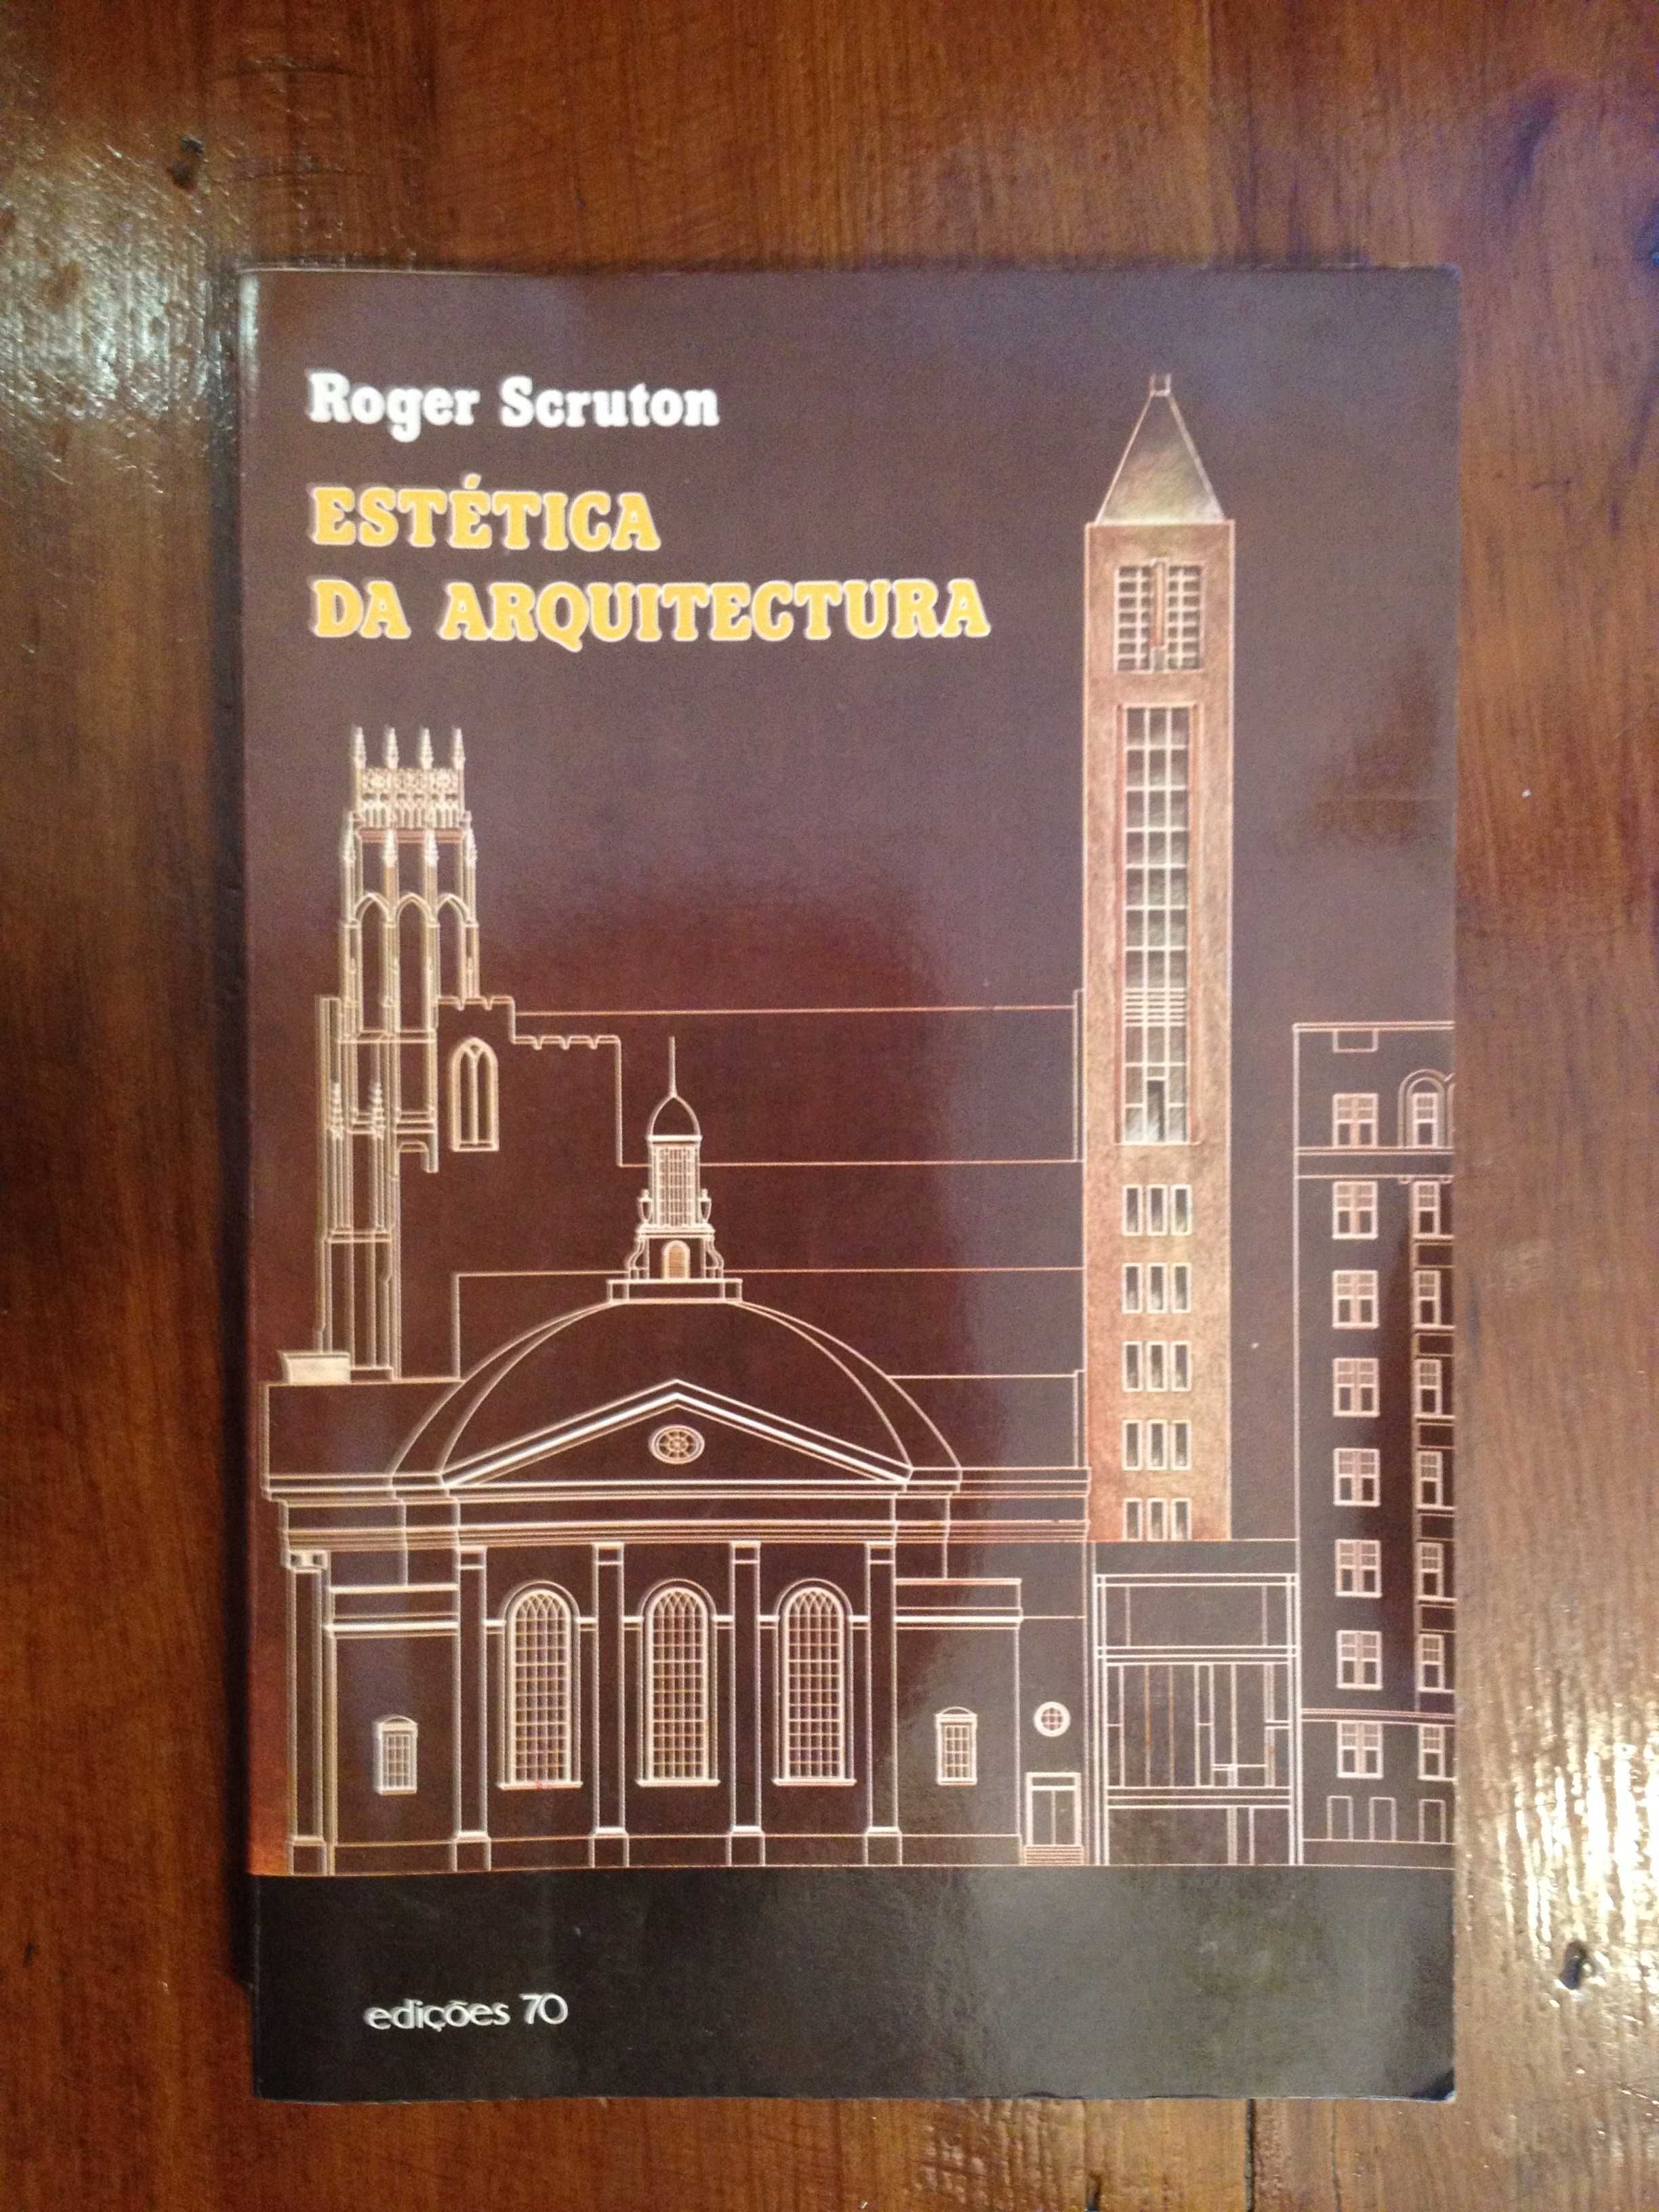 Roger Scruton - Estética da Arquitectura